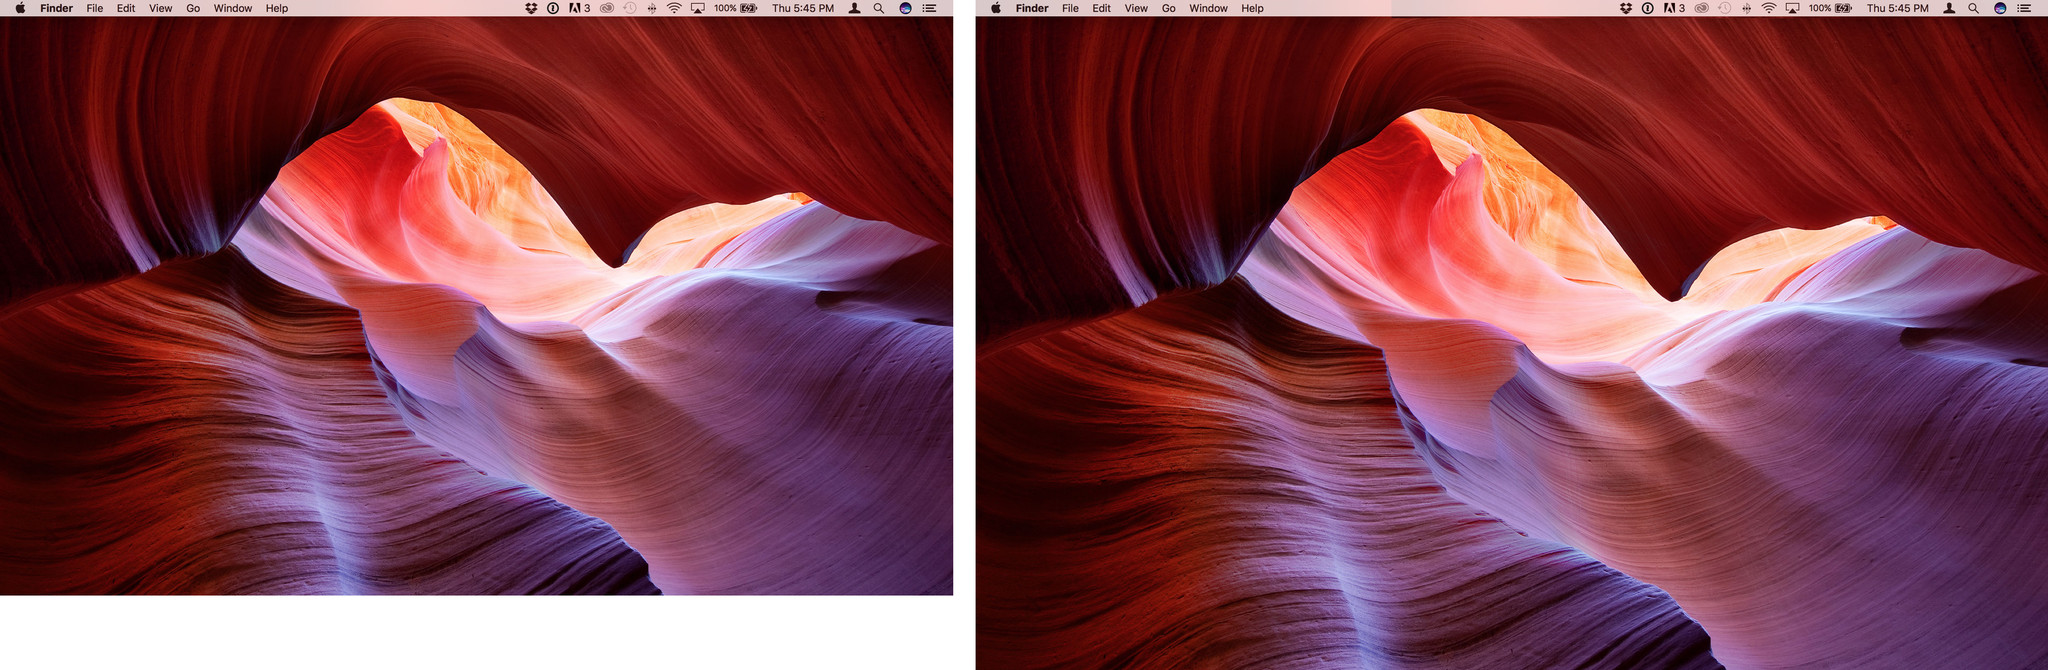 MacBook Pro 13-inch vs 15-inch comparison